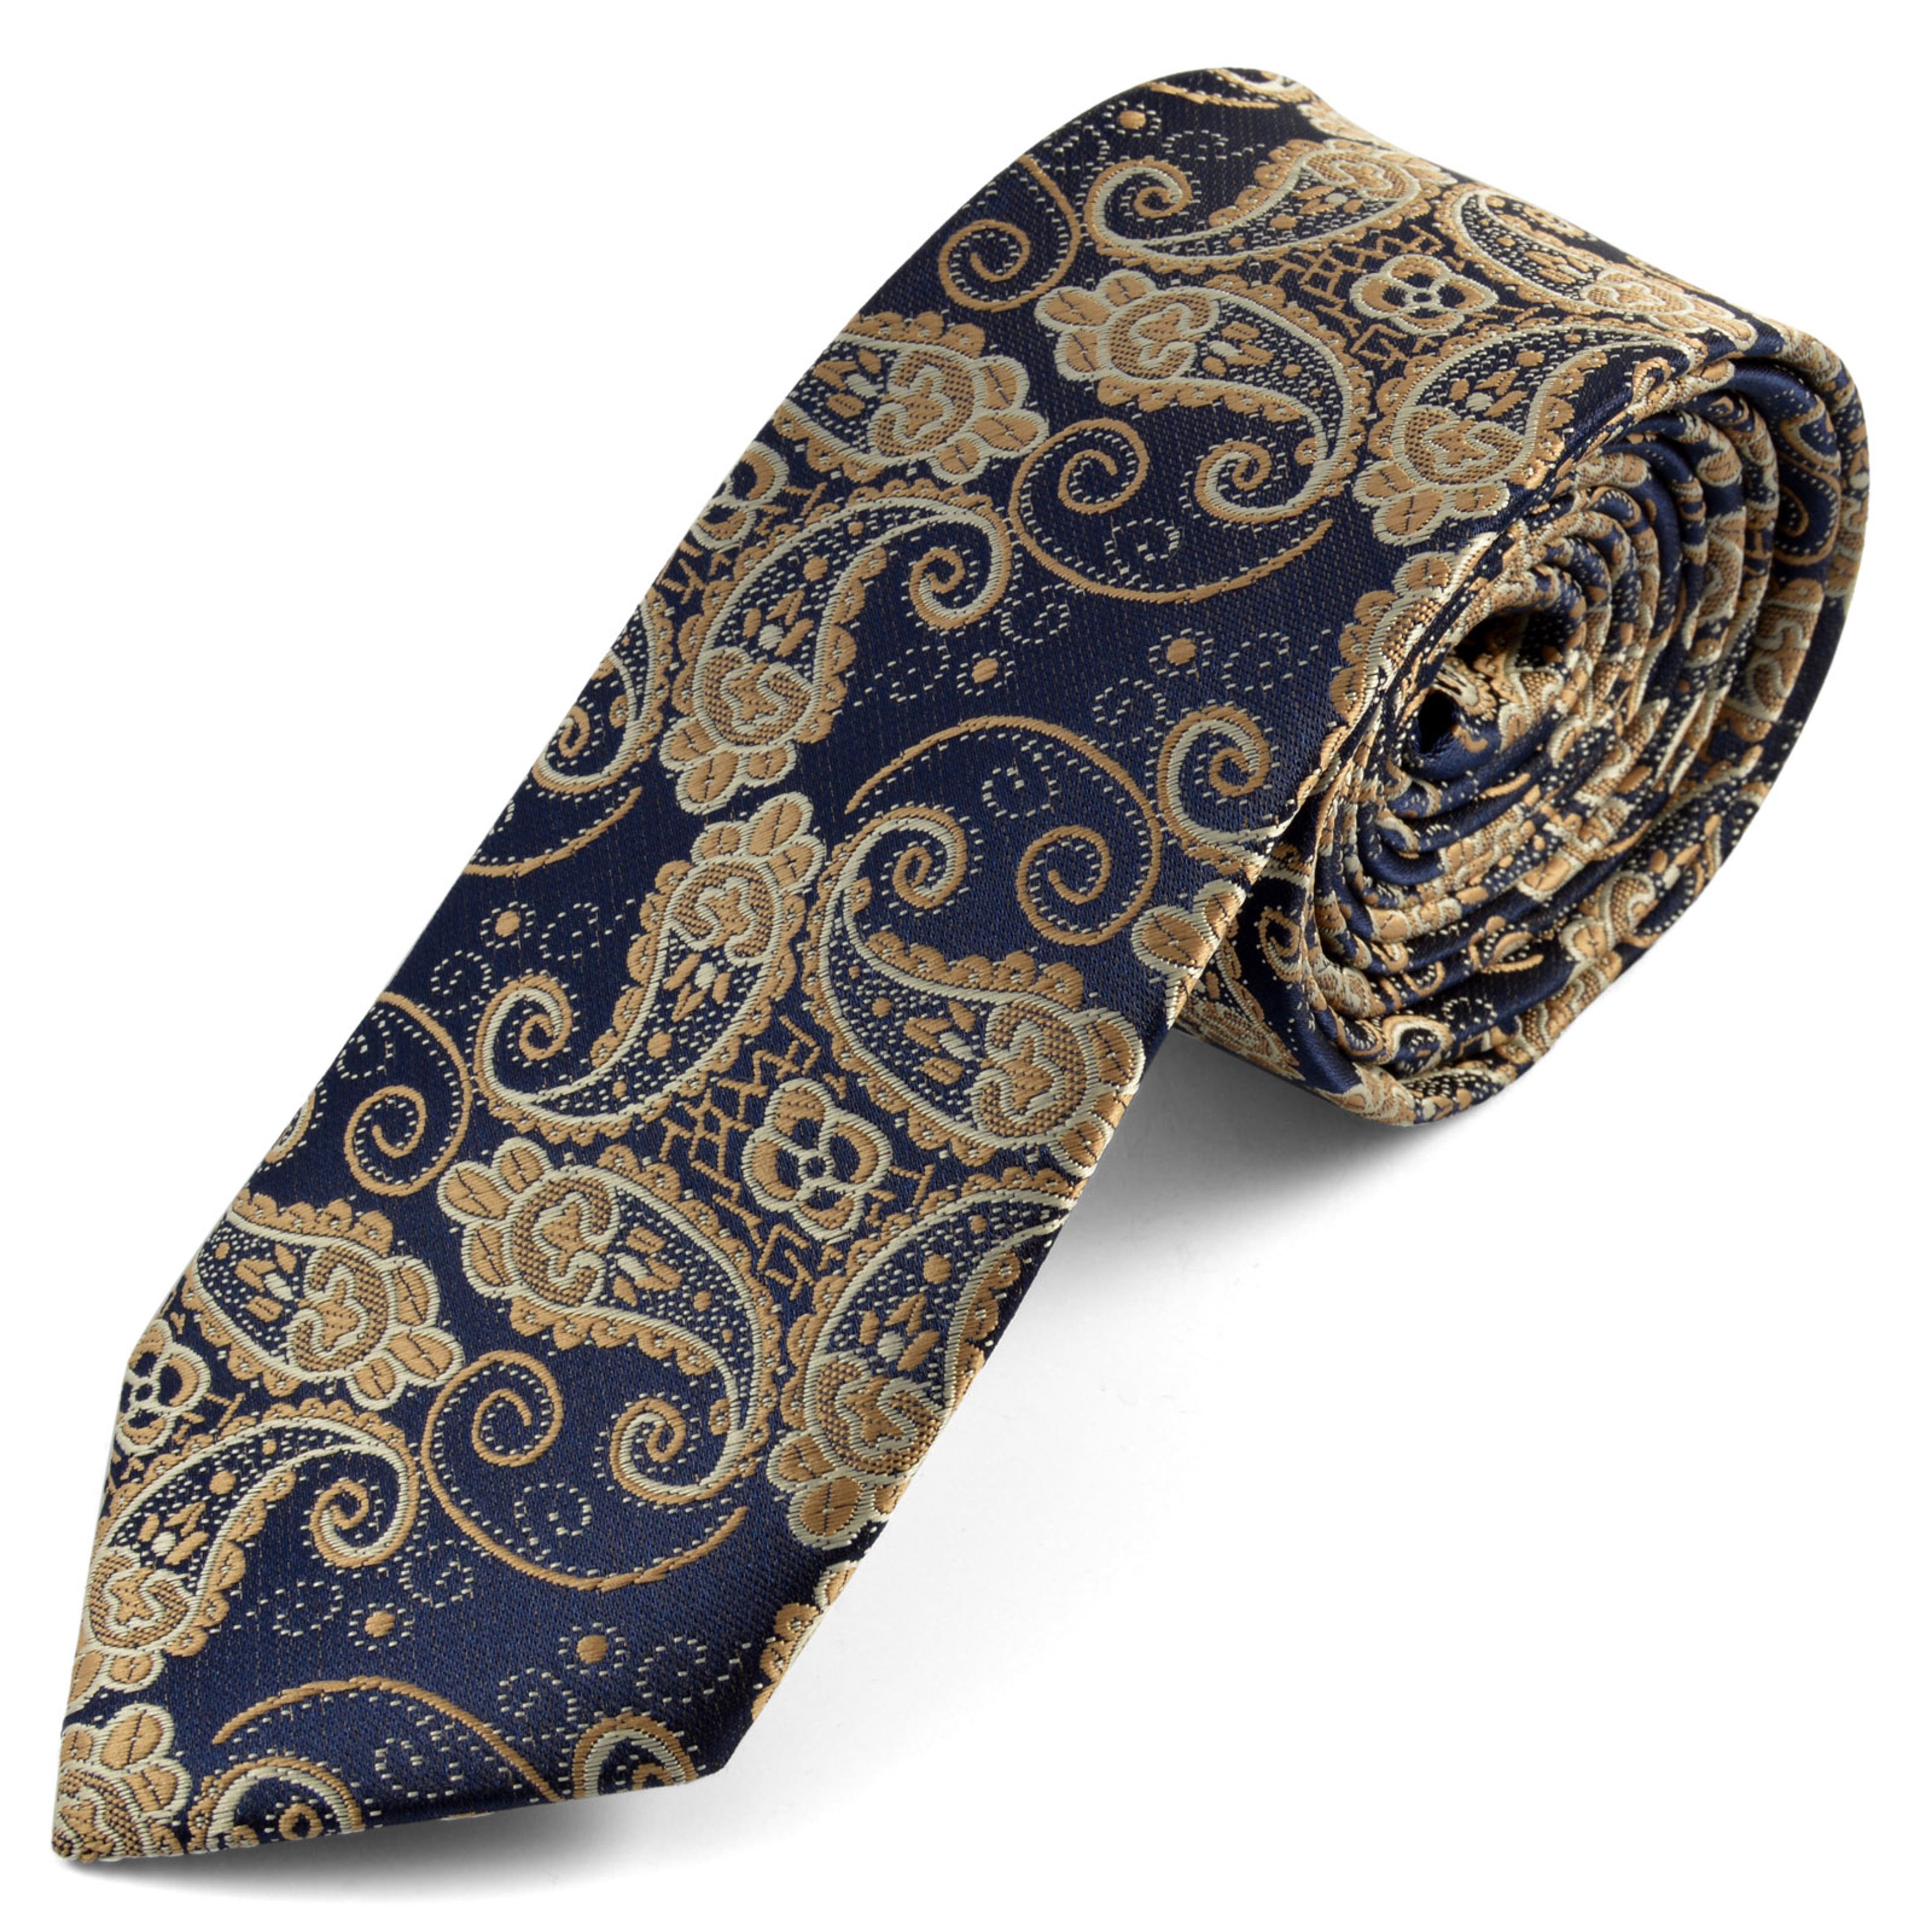 Kék színű kasmírmintás nyakkendő